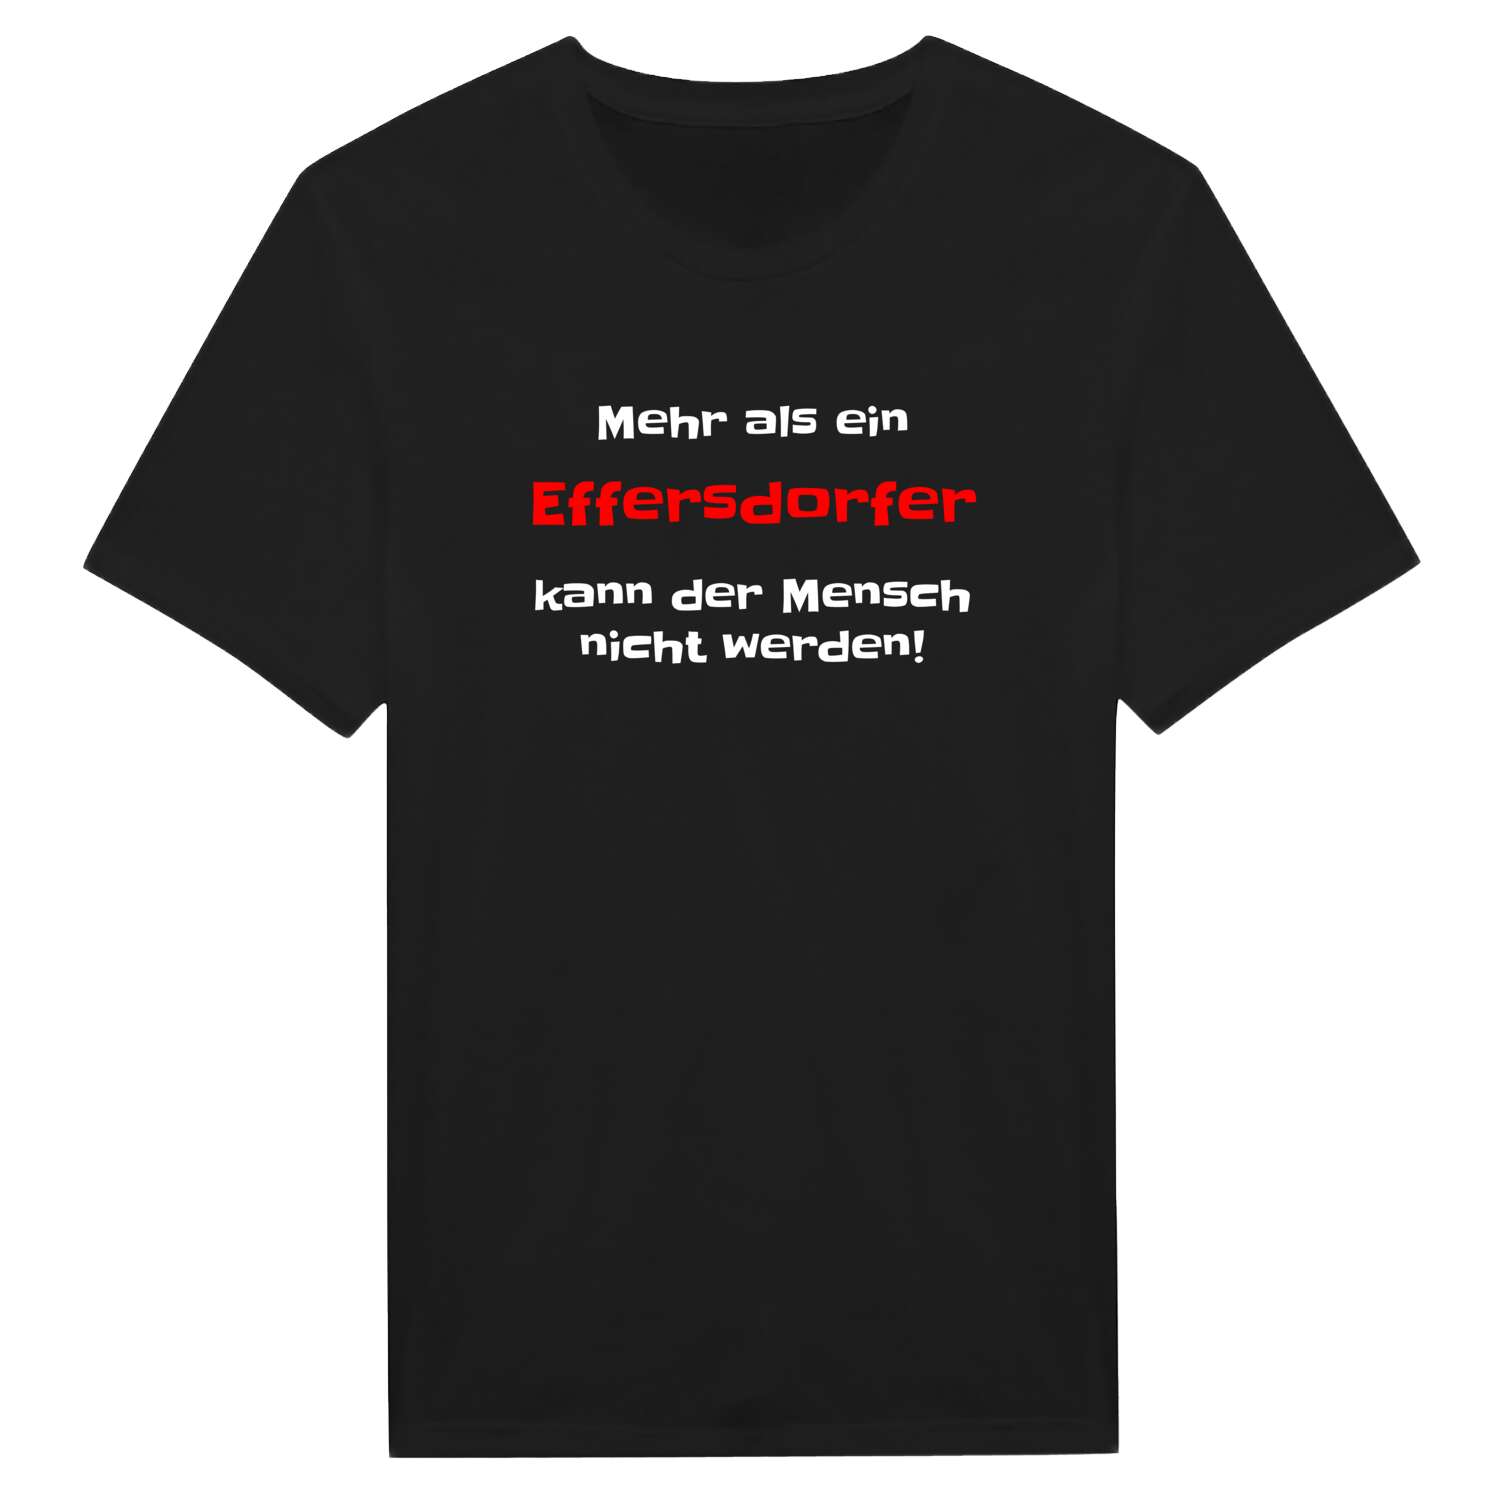 Effersdorf T-Shirt »Mehr als ein«